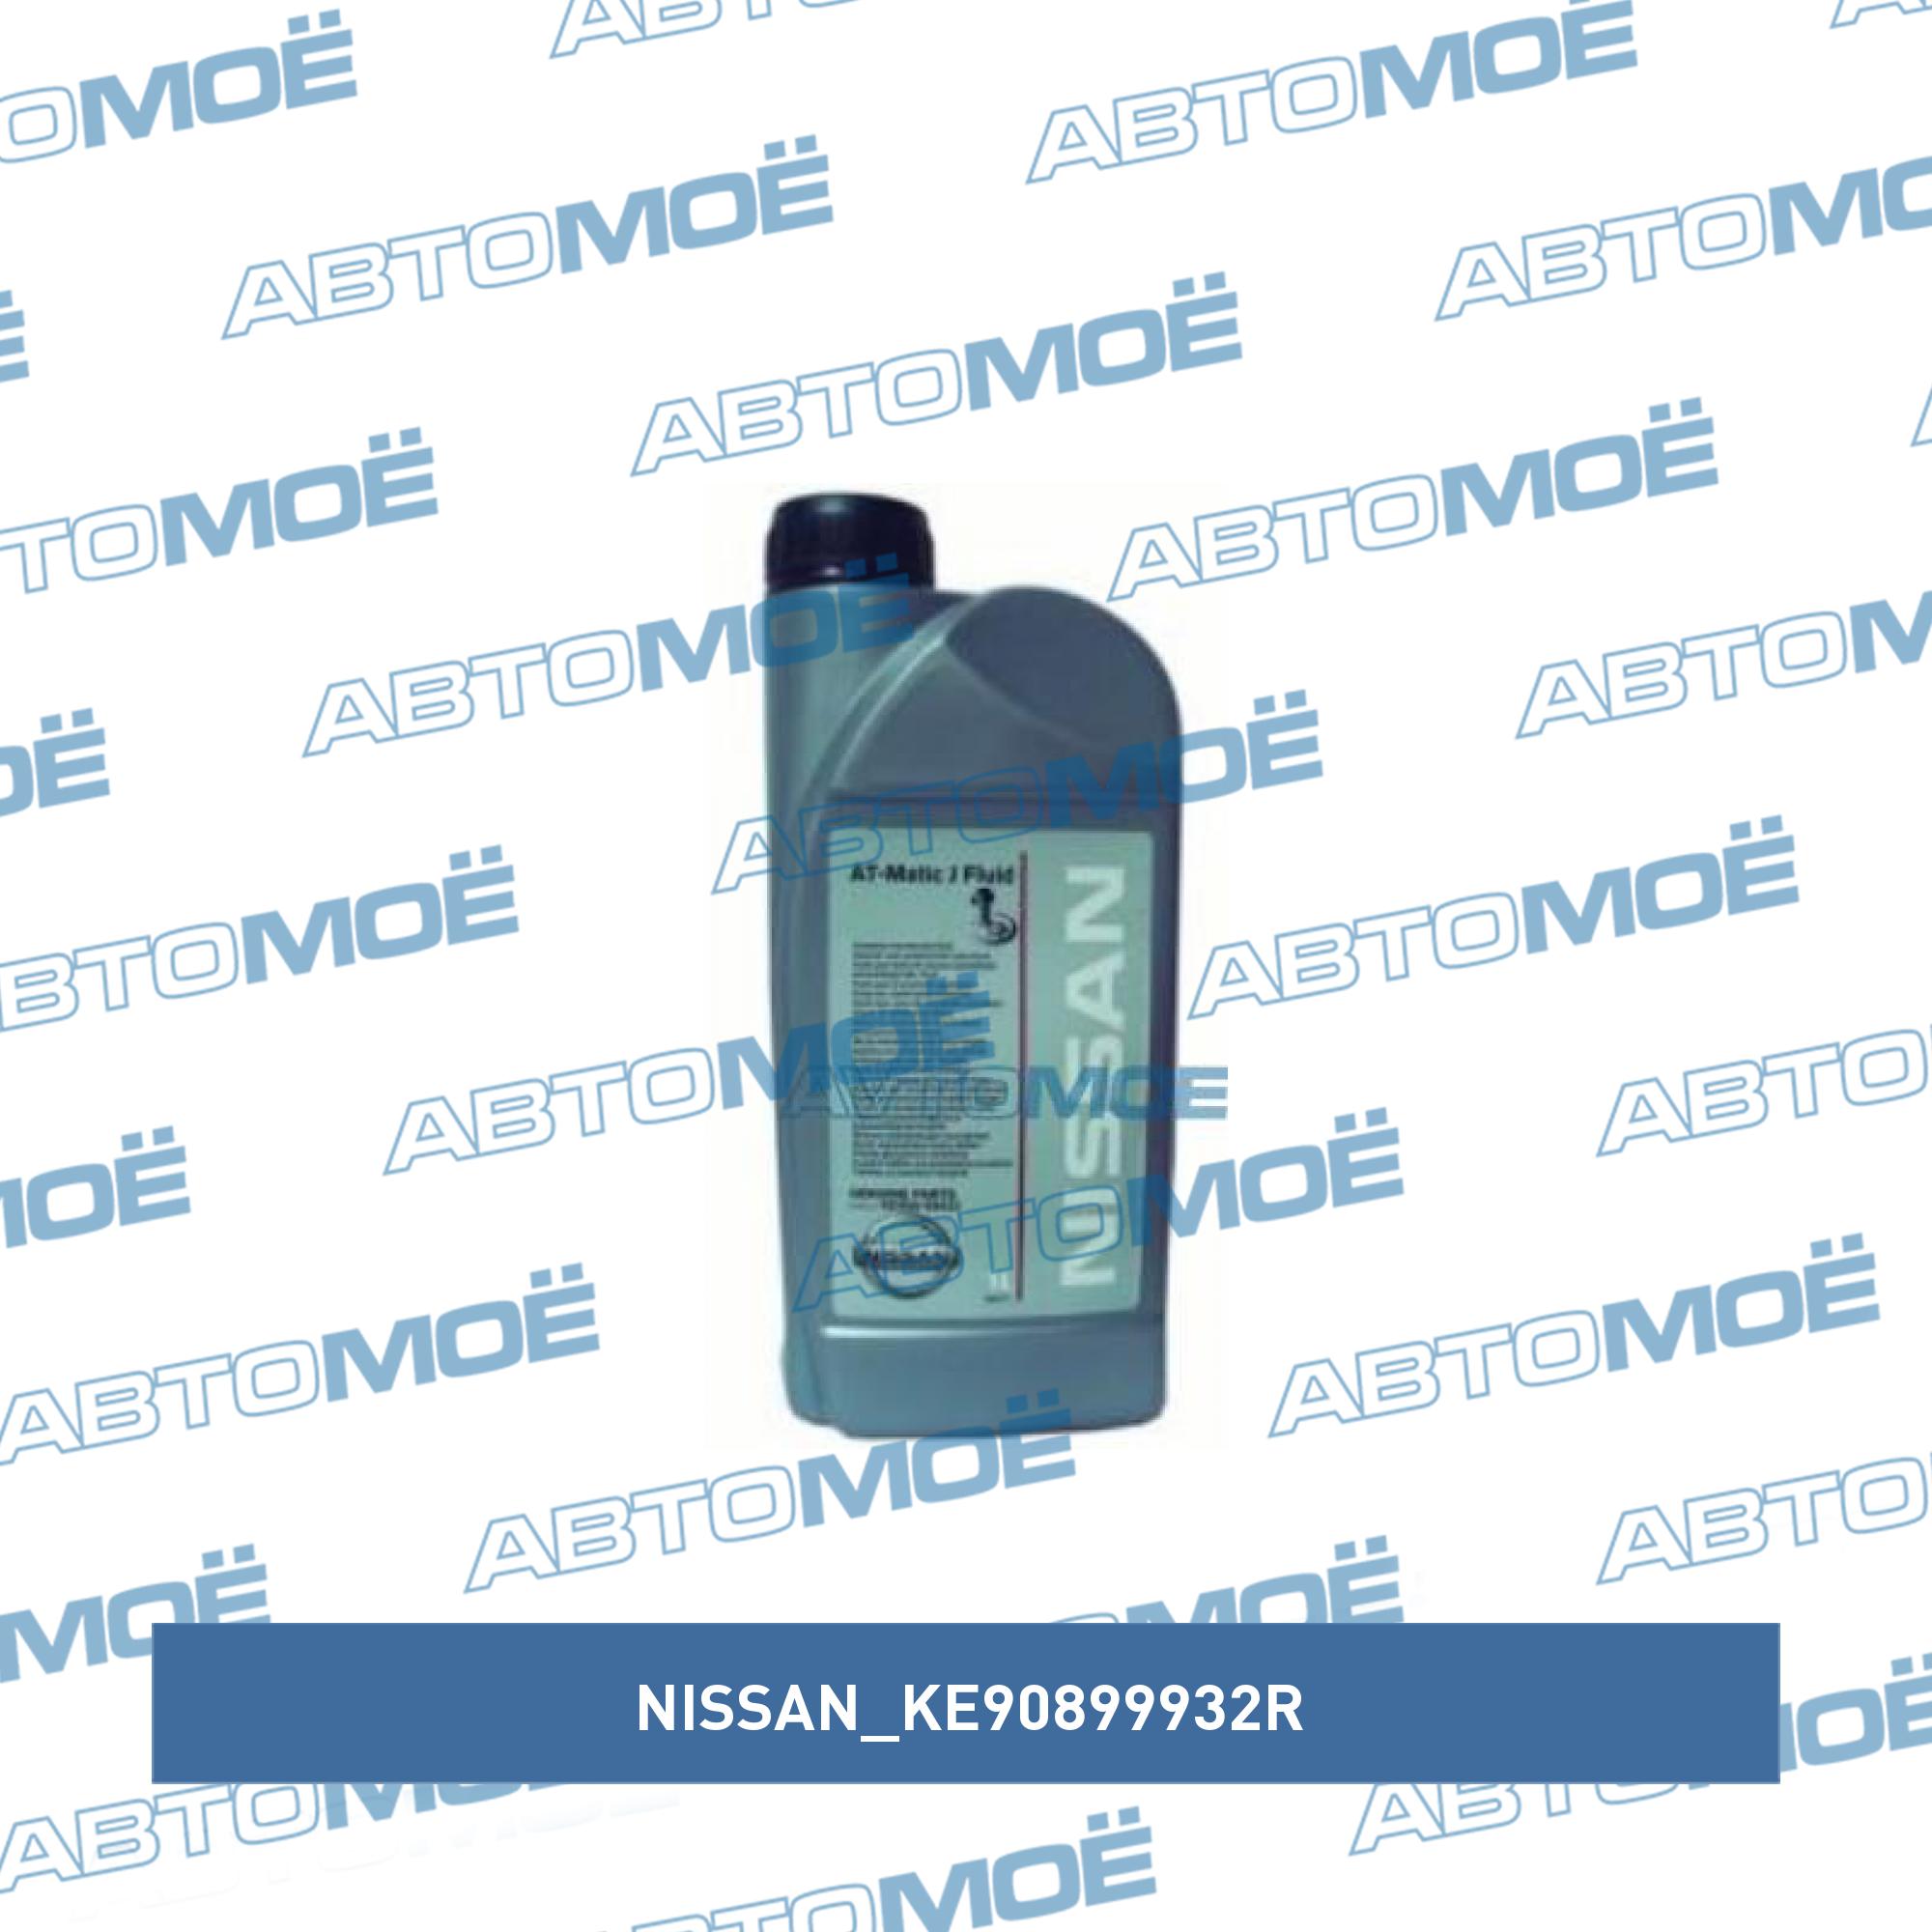 Масло трансмиссионное Nissan ATF Matic J 1л NISSAN KE90899932R